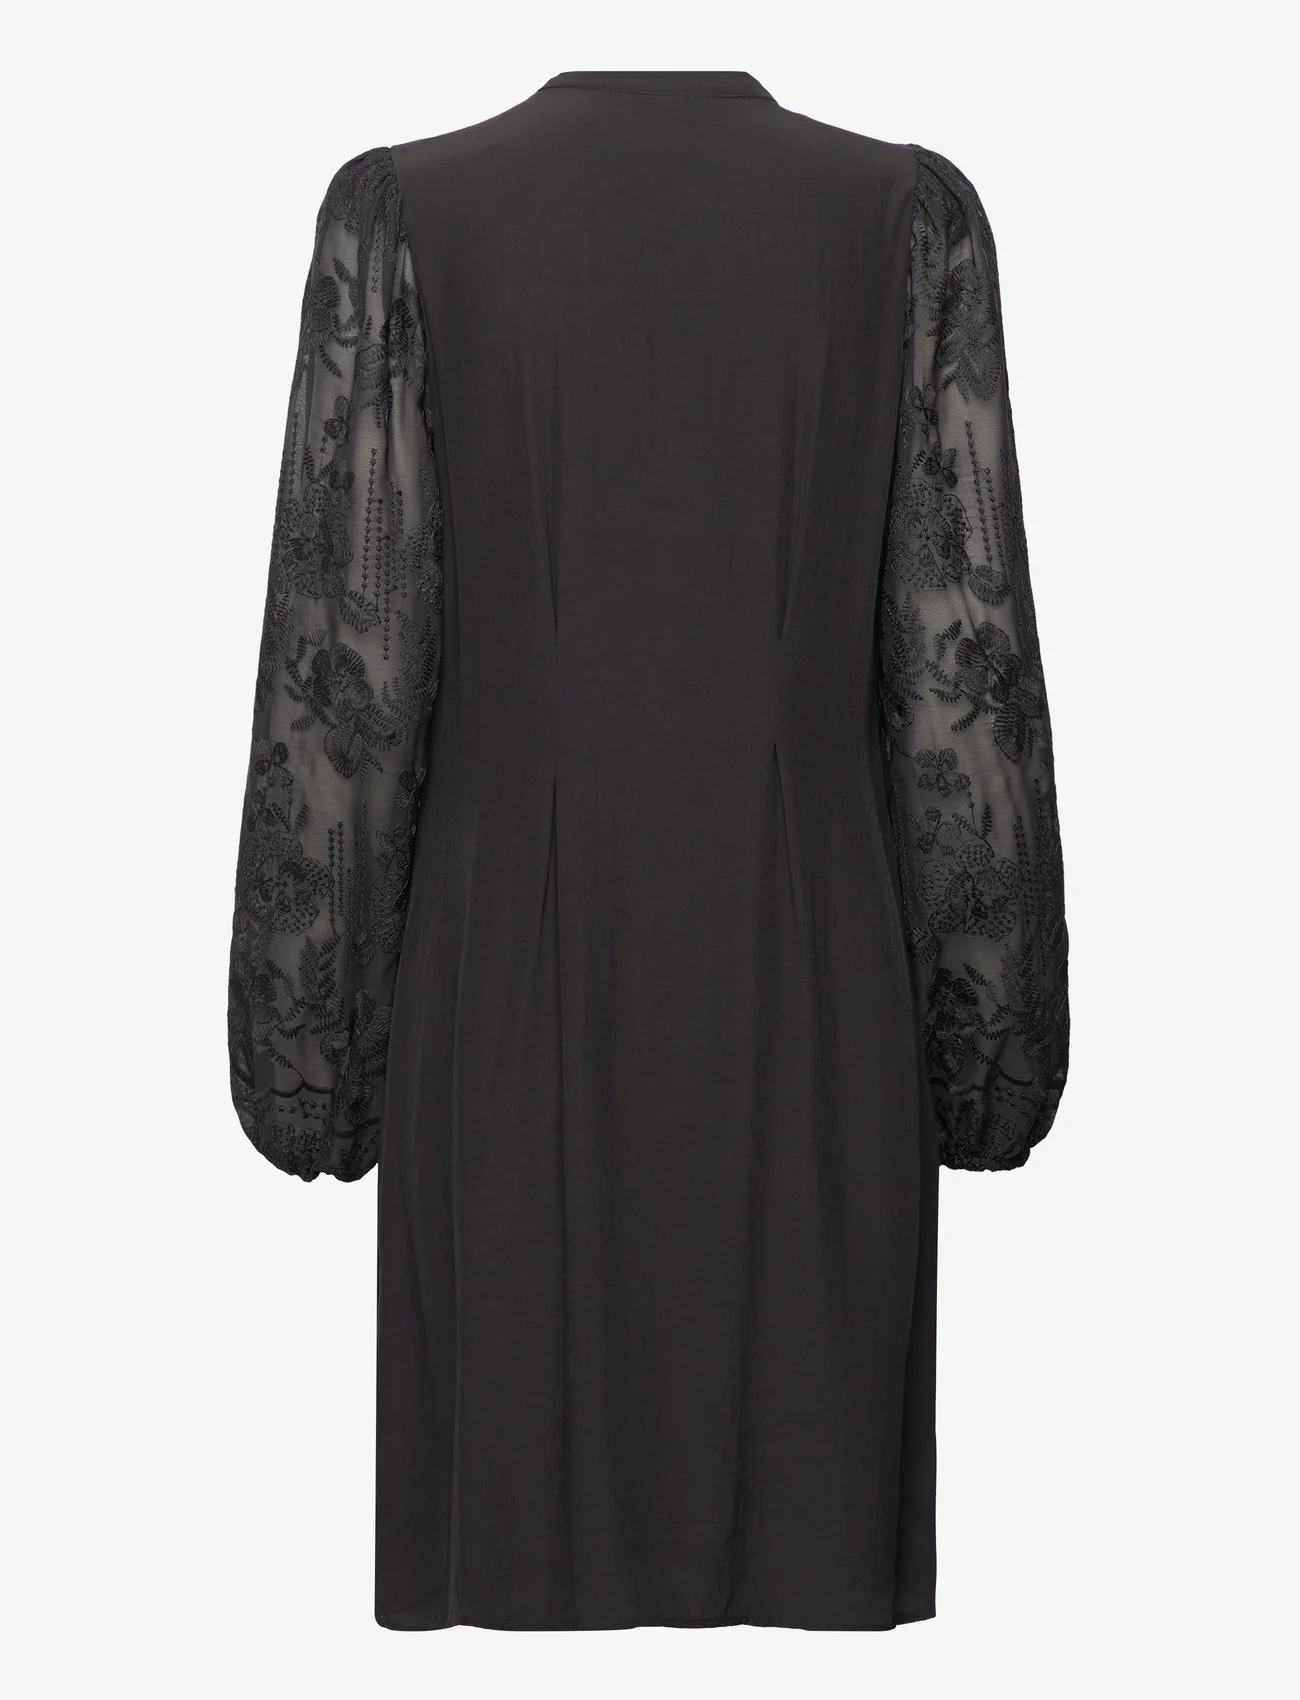 Culture - CUasmine Dress - midi-jurken - black - 1